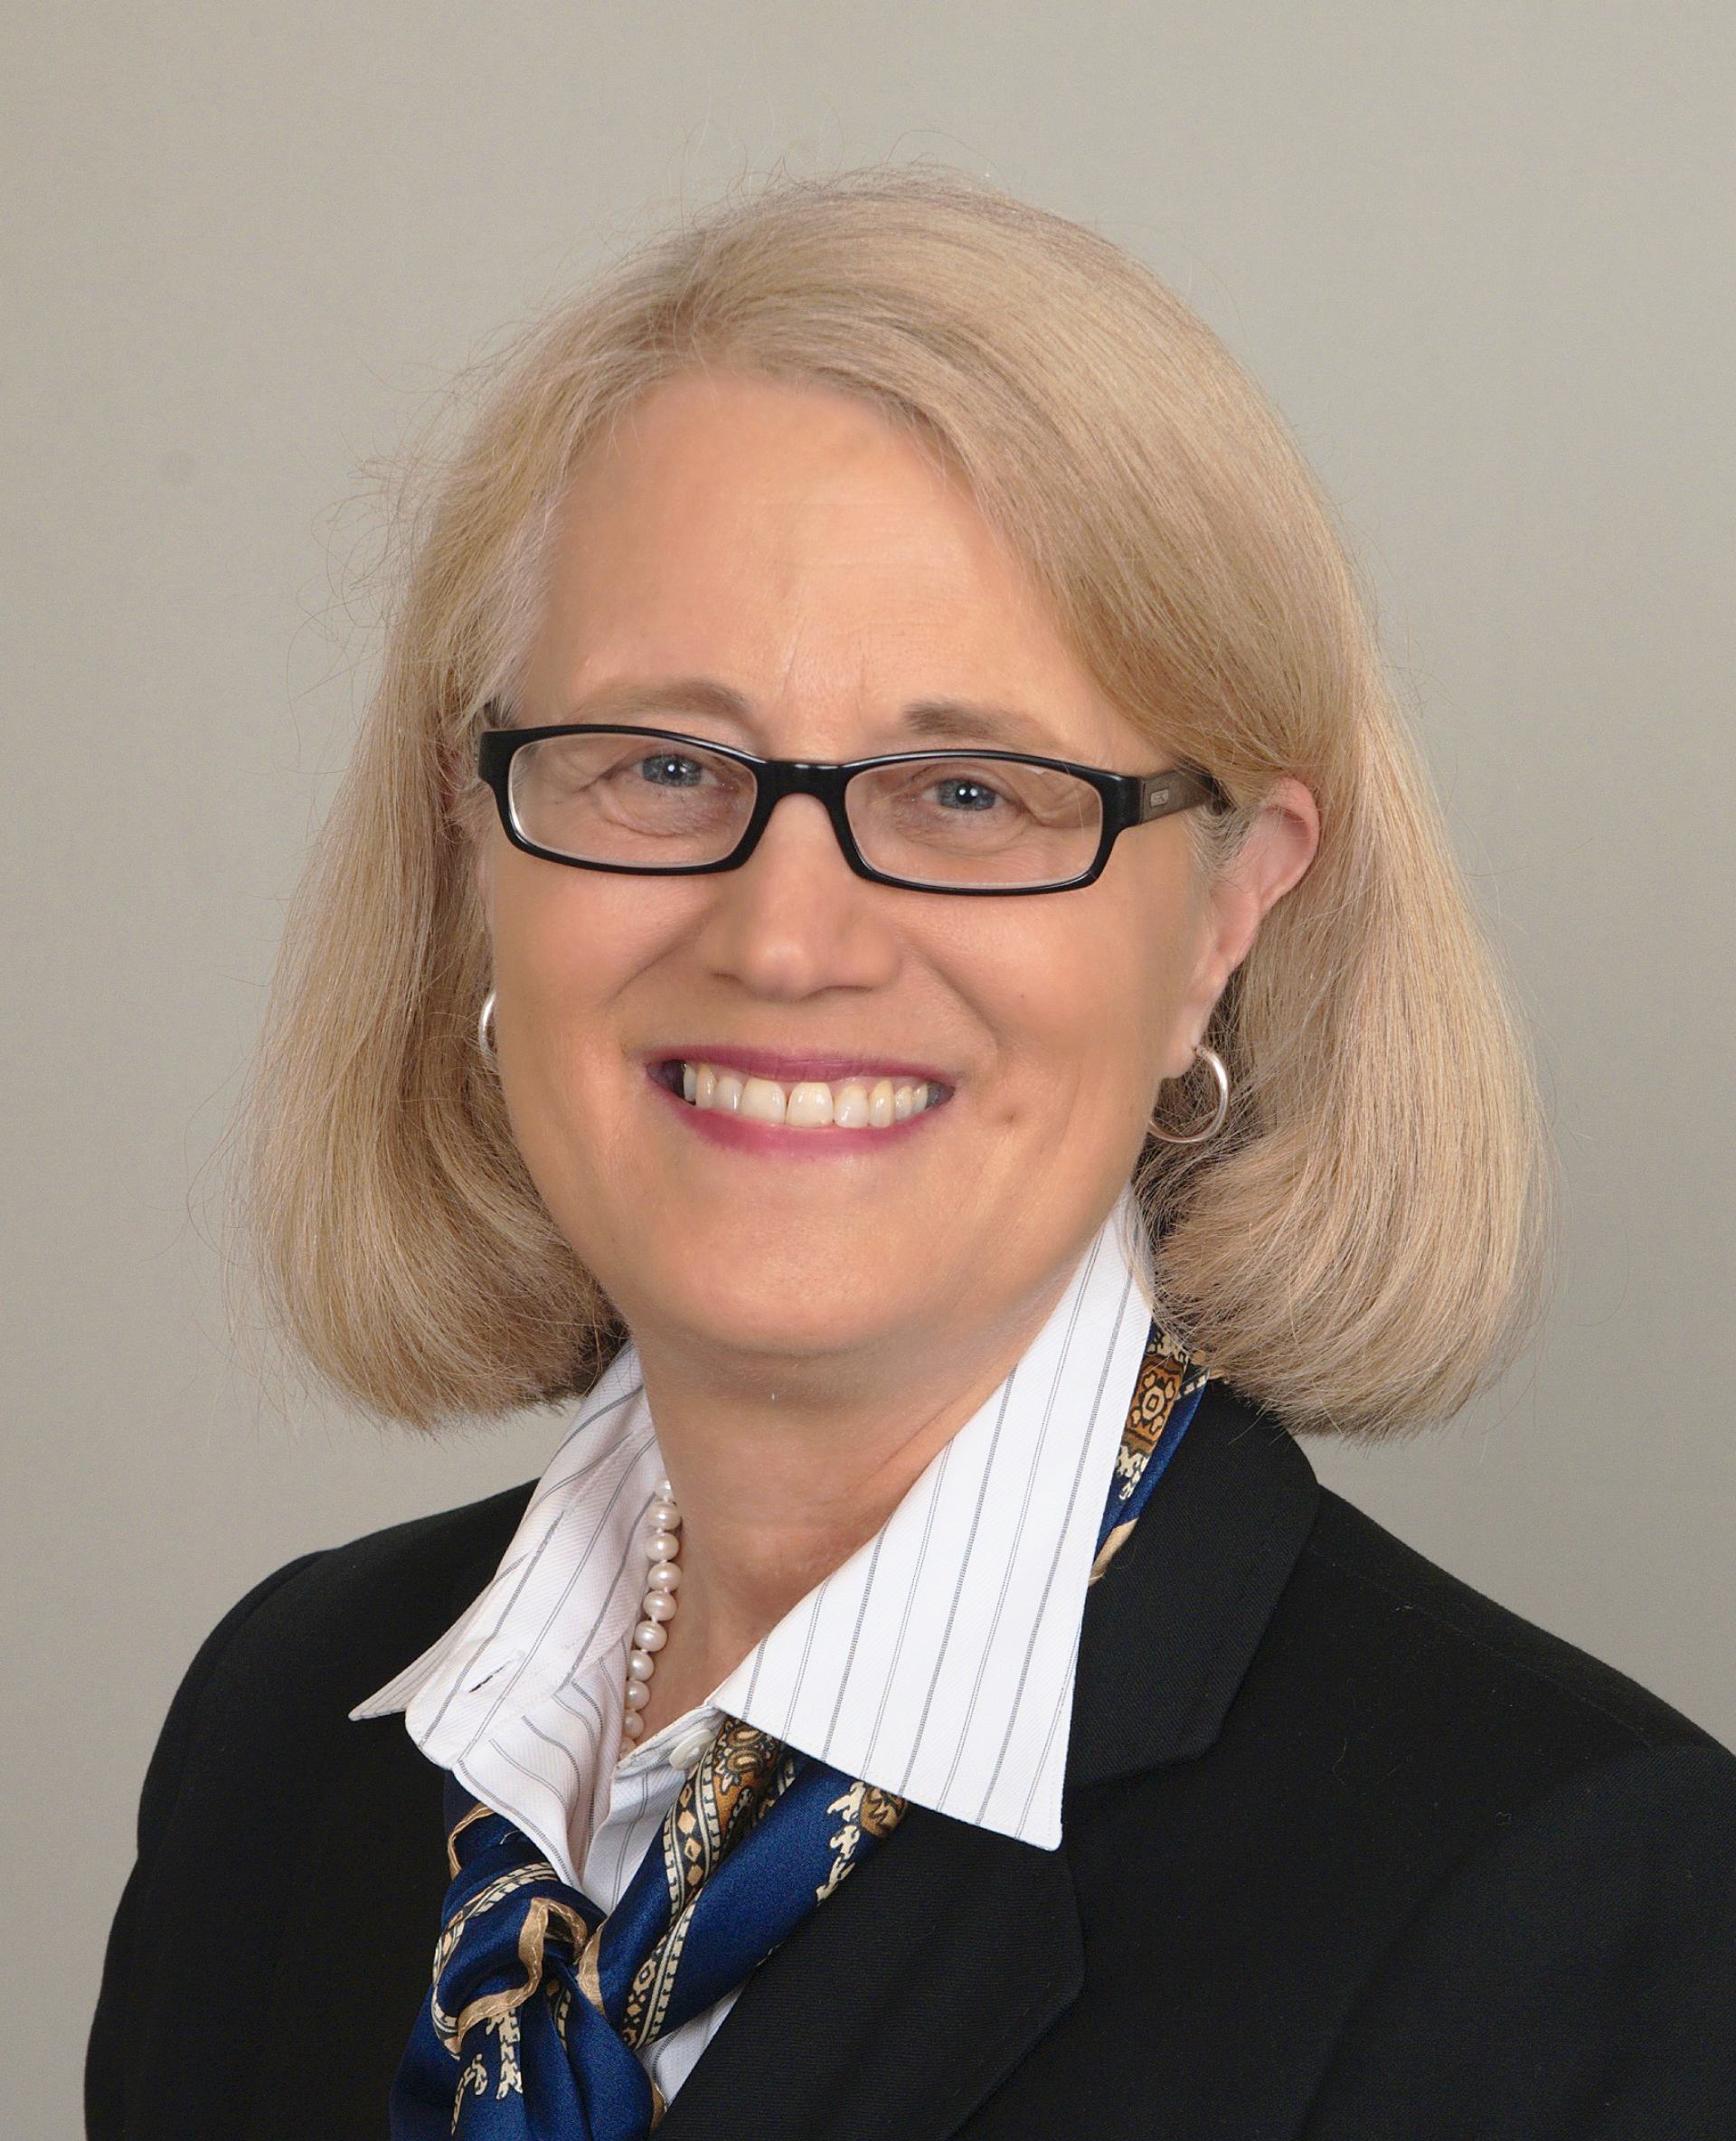  senator Karla Drenner